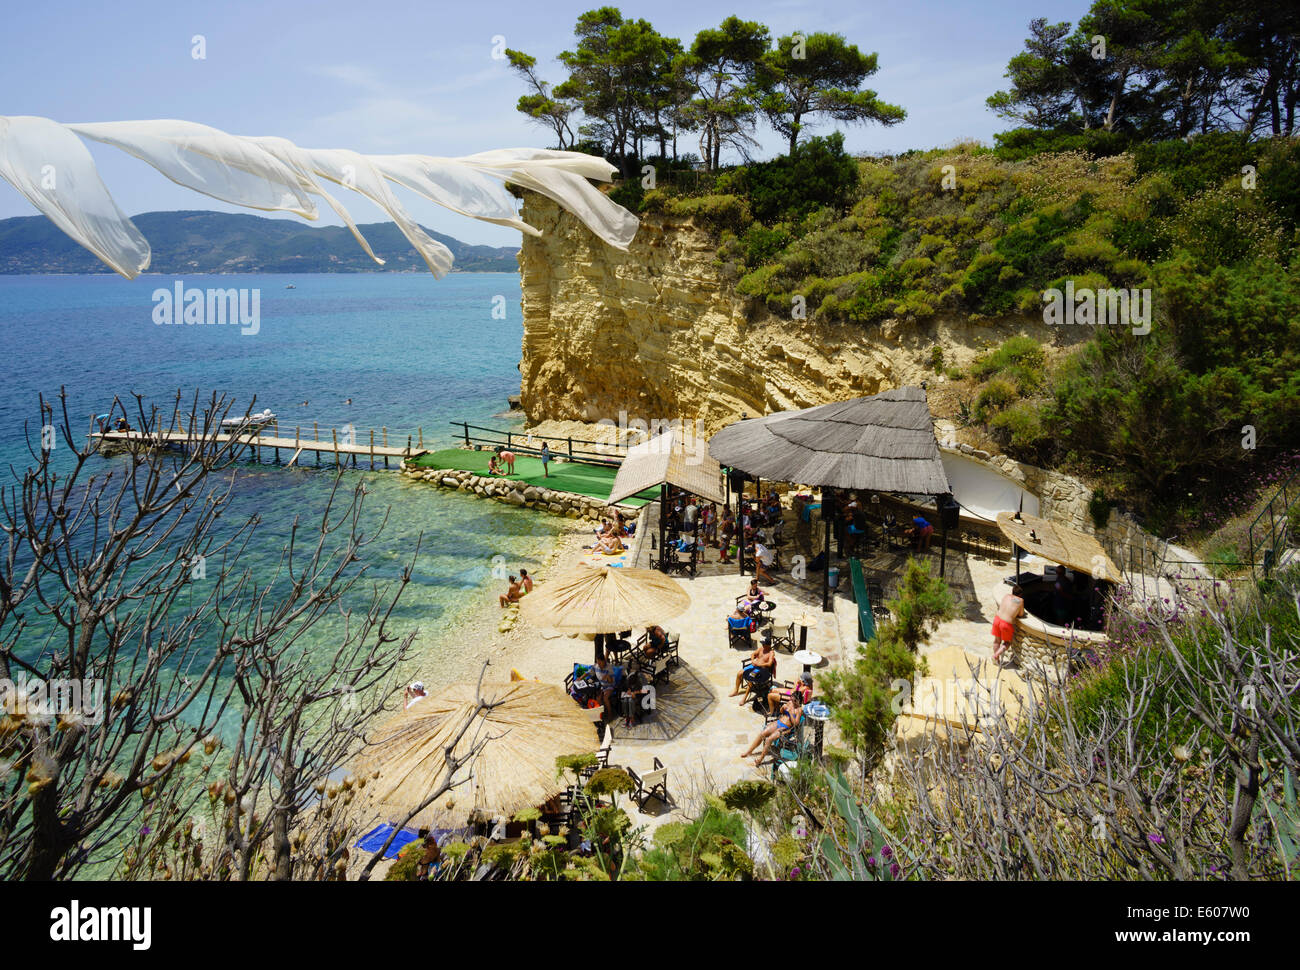 Zante, Grèce - Agios Sostis resort hébergement île privée avec bar et beach music club. Club de plage avec jour et nuit DJ party Banque D'Images